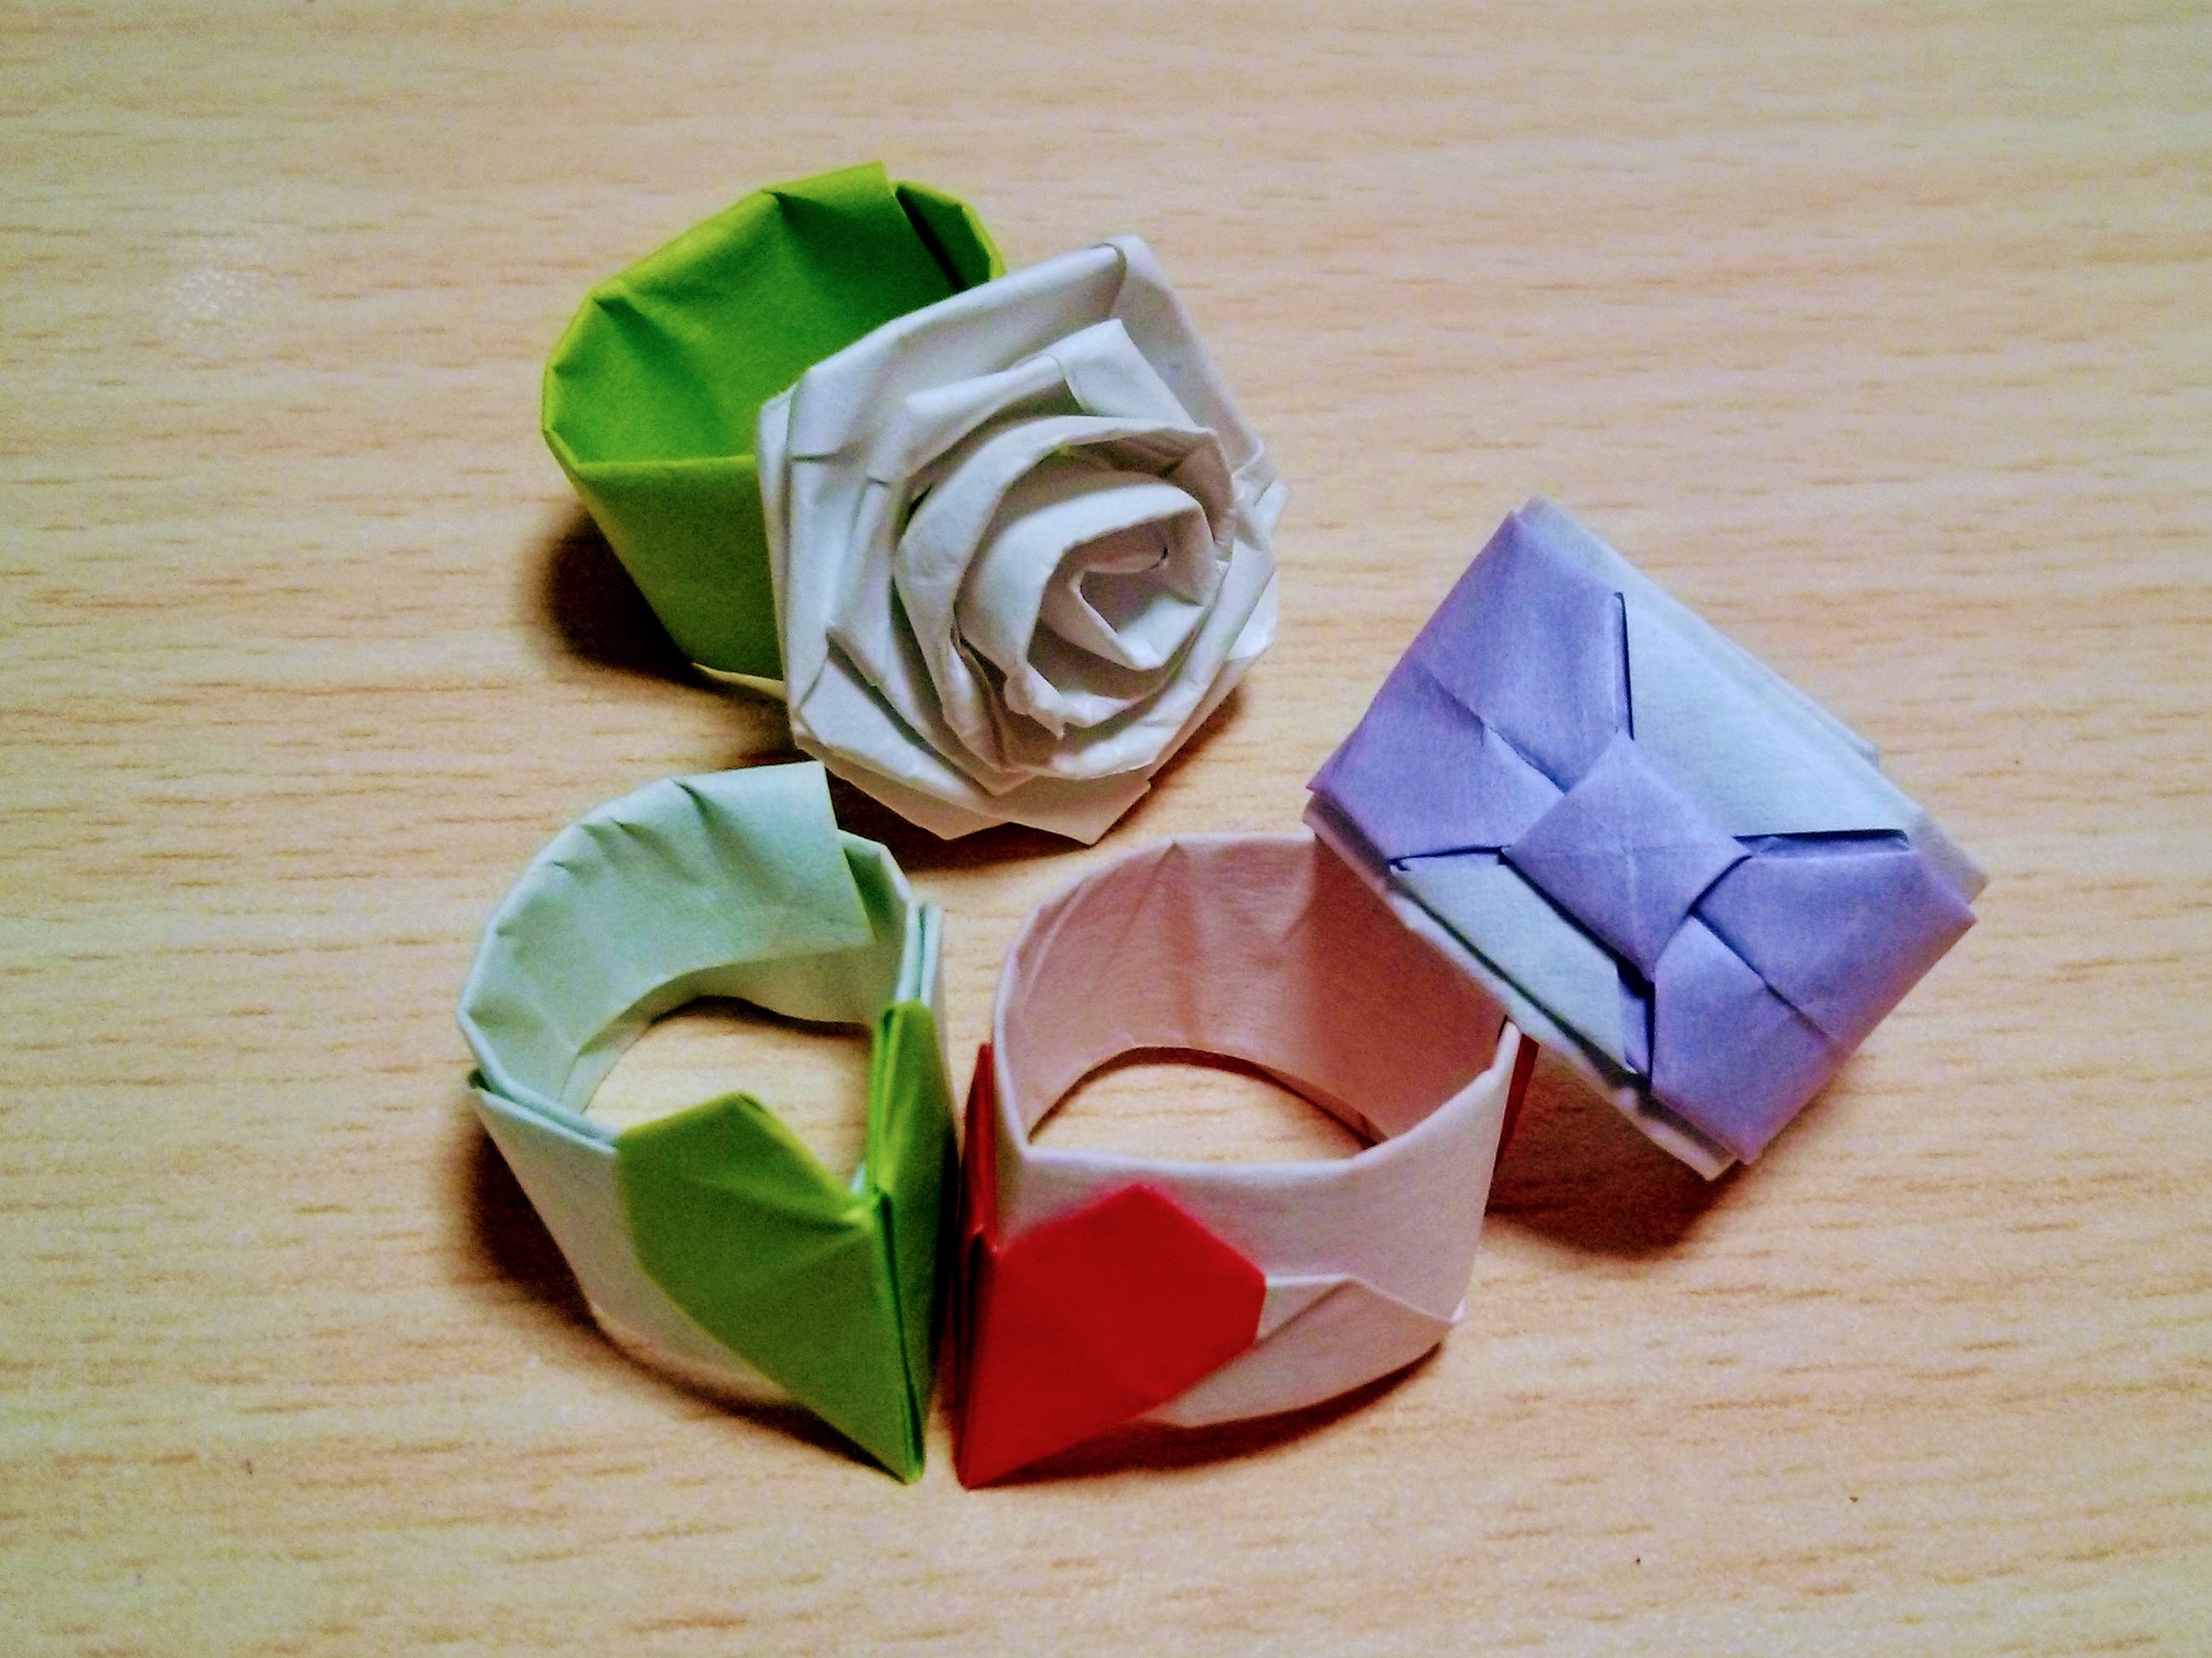 折り紙で作る 指輪 の折り方11選 簡単できる宝石やリボンの作り方を解説 暮らし の